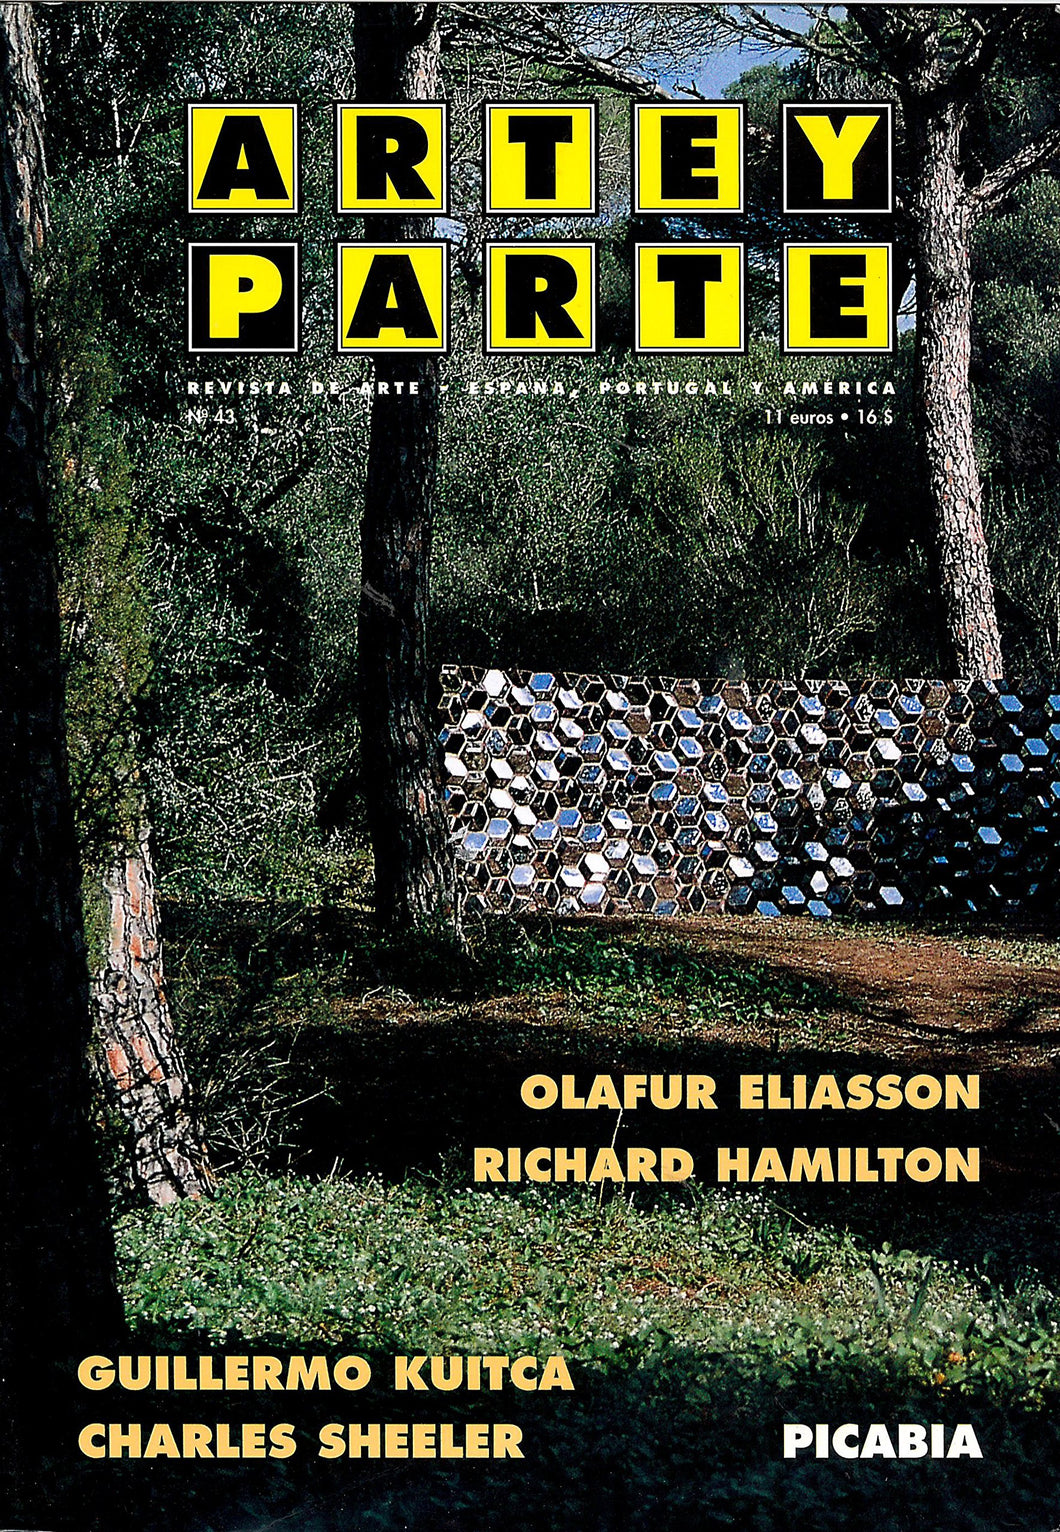 Artey Parte: Revista de Arte - España, Portugal y América no. 43- Febrero-Marza 2003